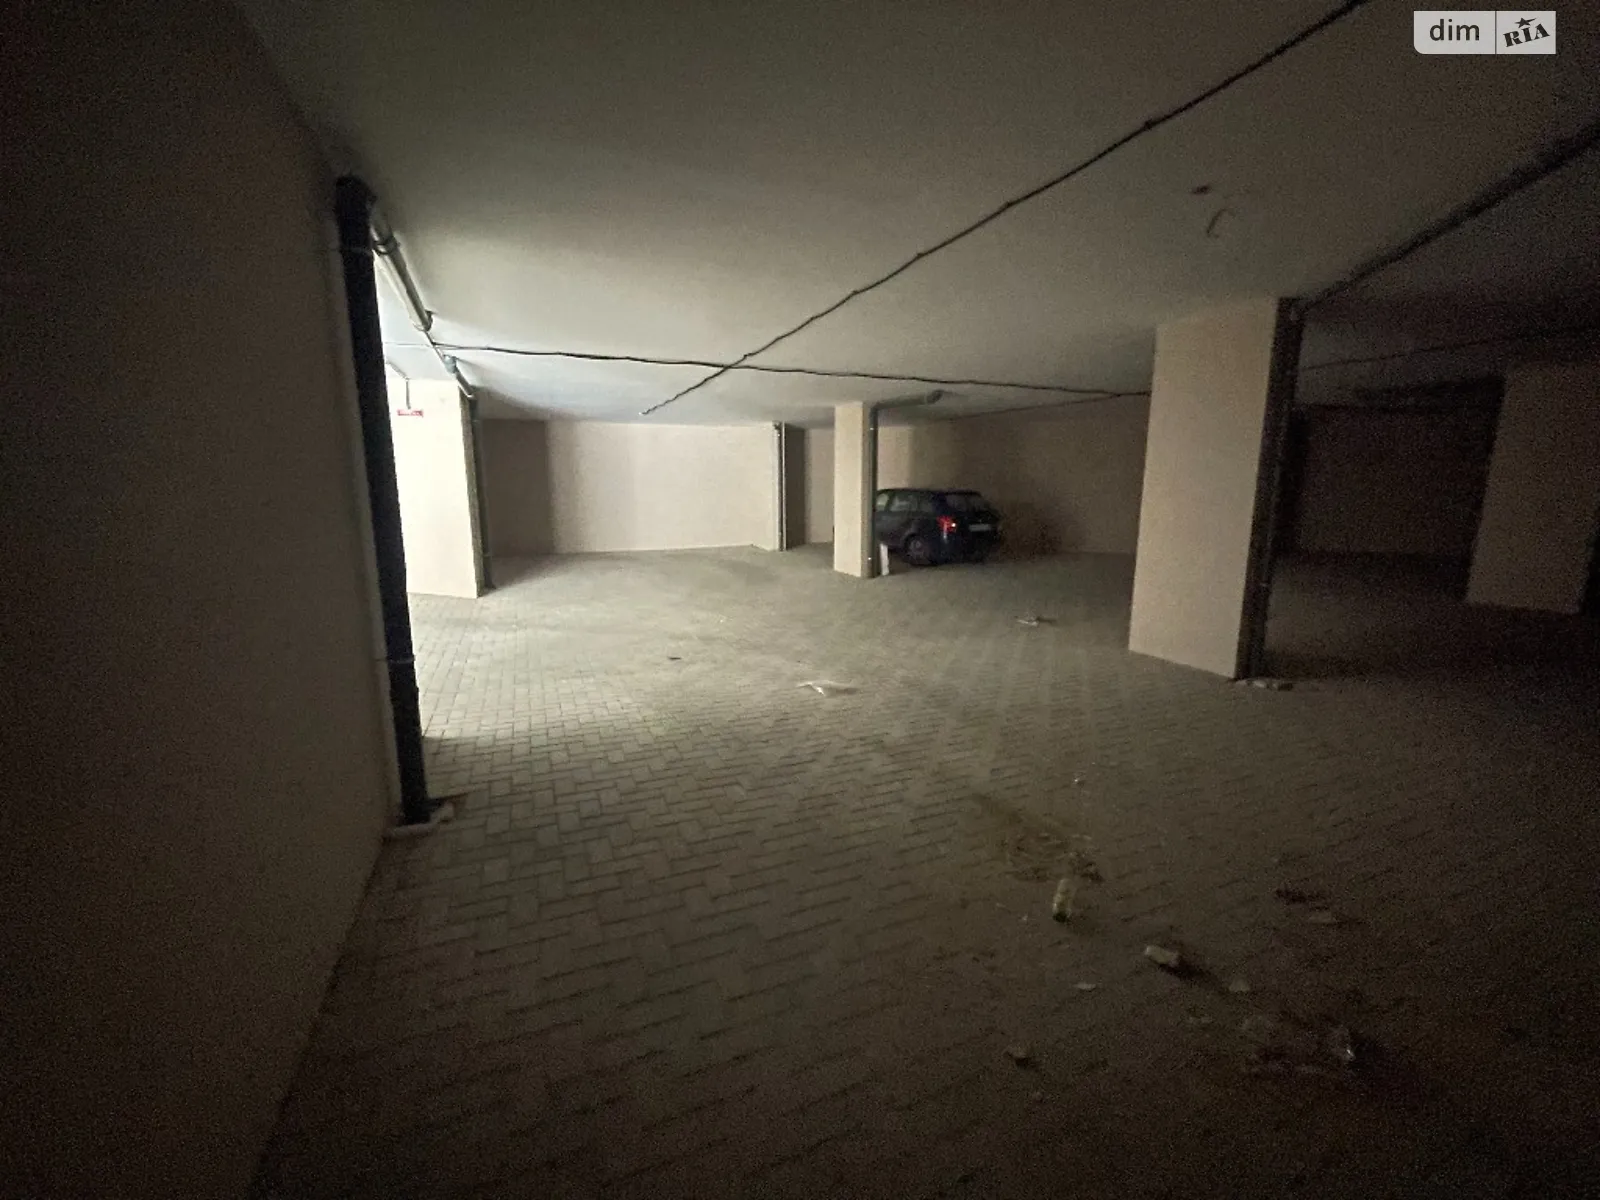 Продается подземный паркинг под легковое авто на 16.96 кв. м - фото 3